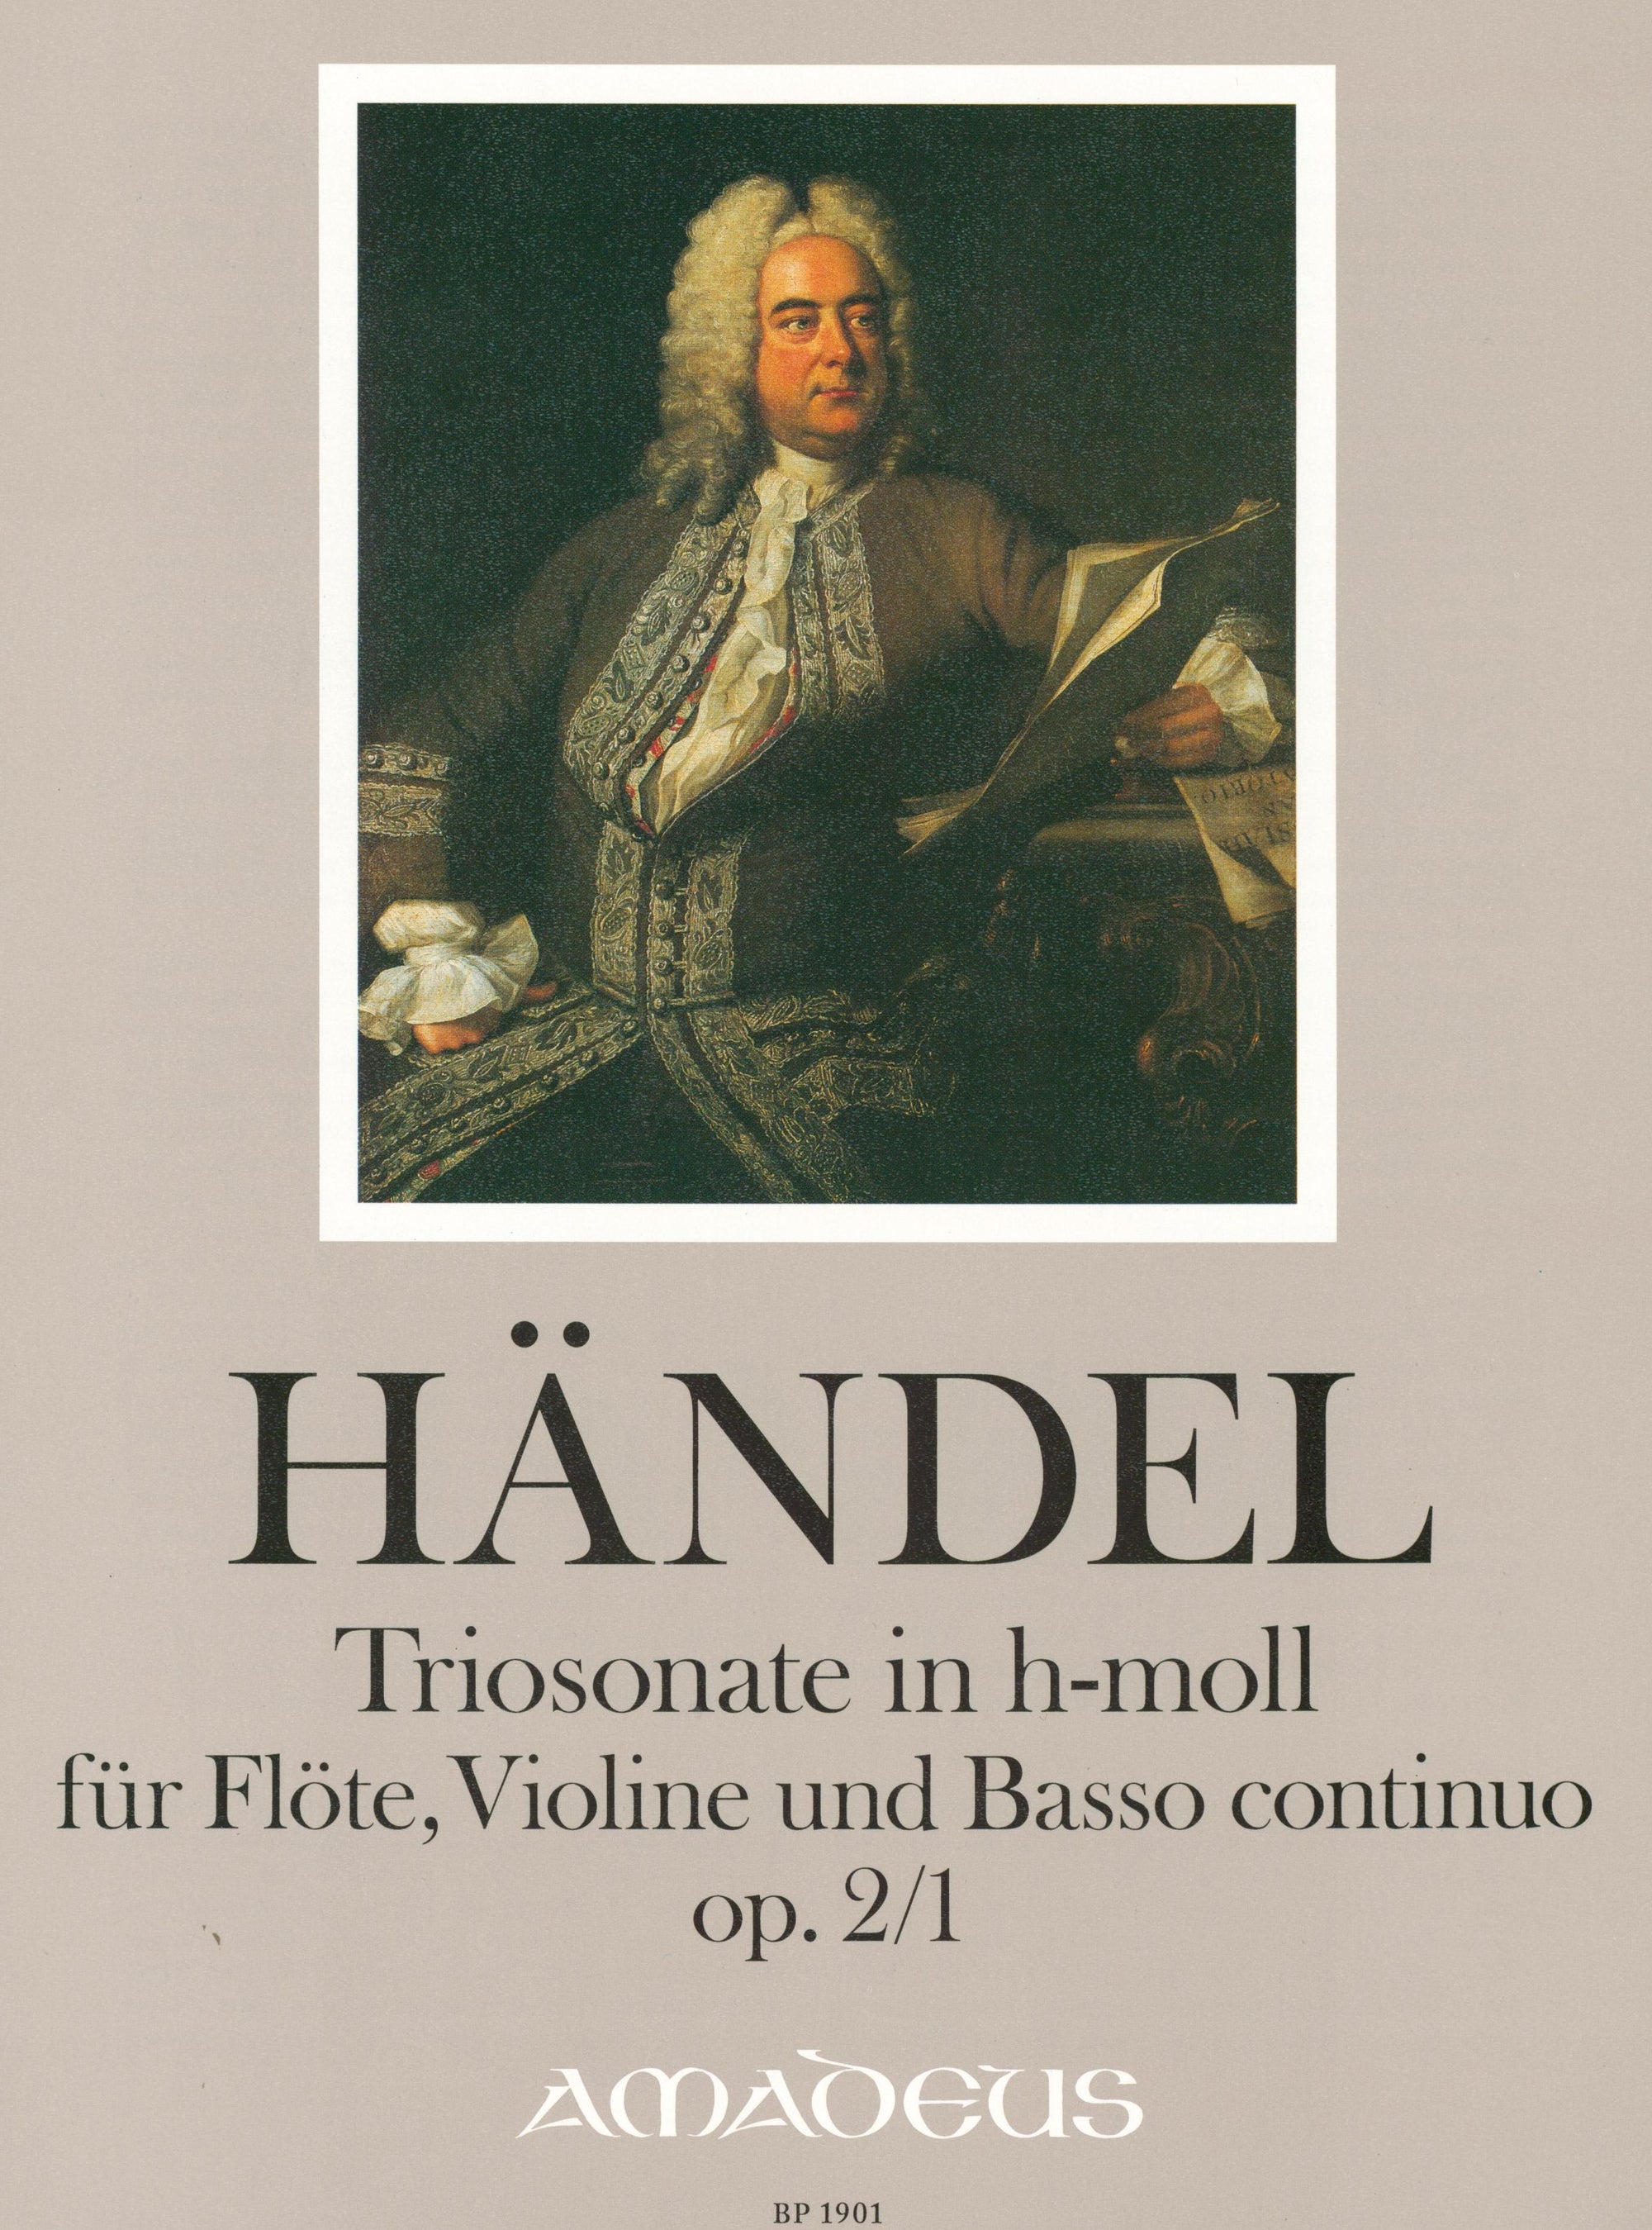 Handel: Trio Sonata in B Minor, HWV 386b, Op. 2, No. 1